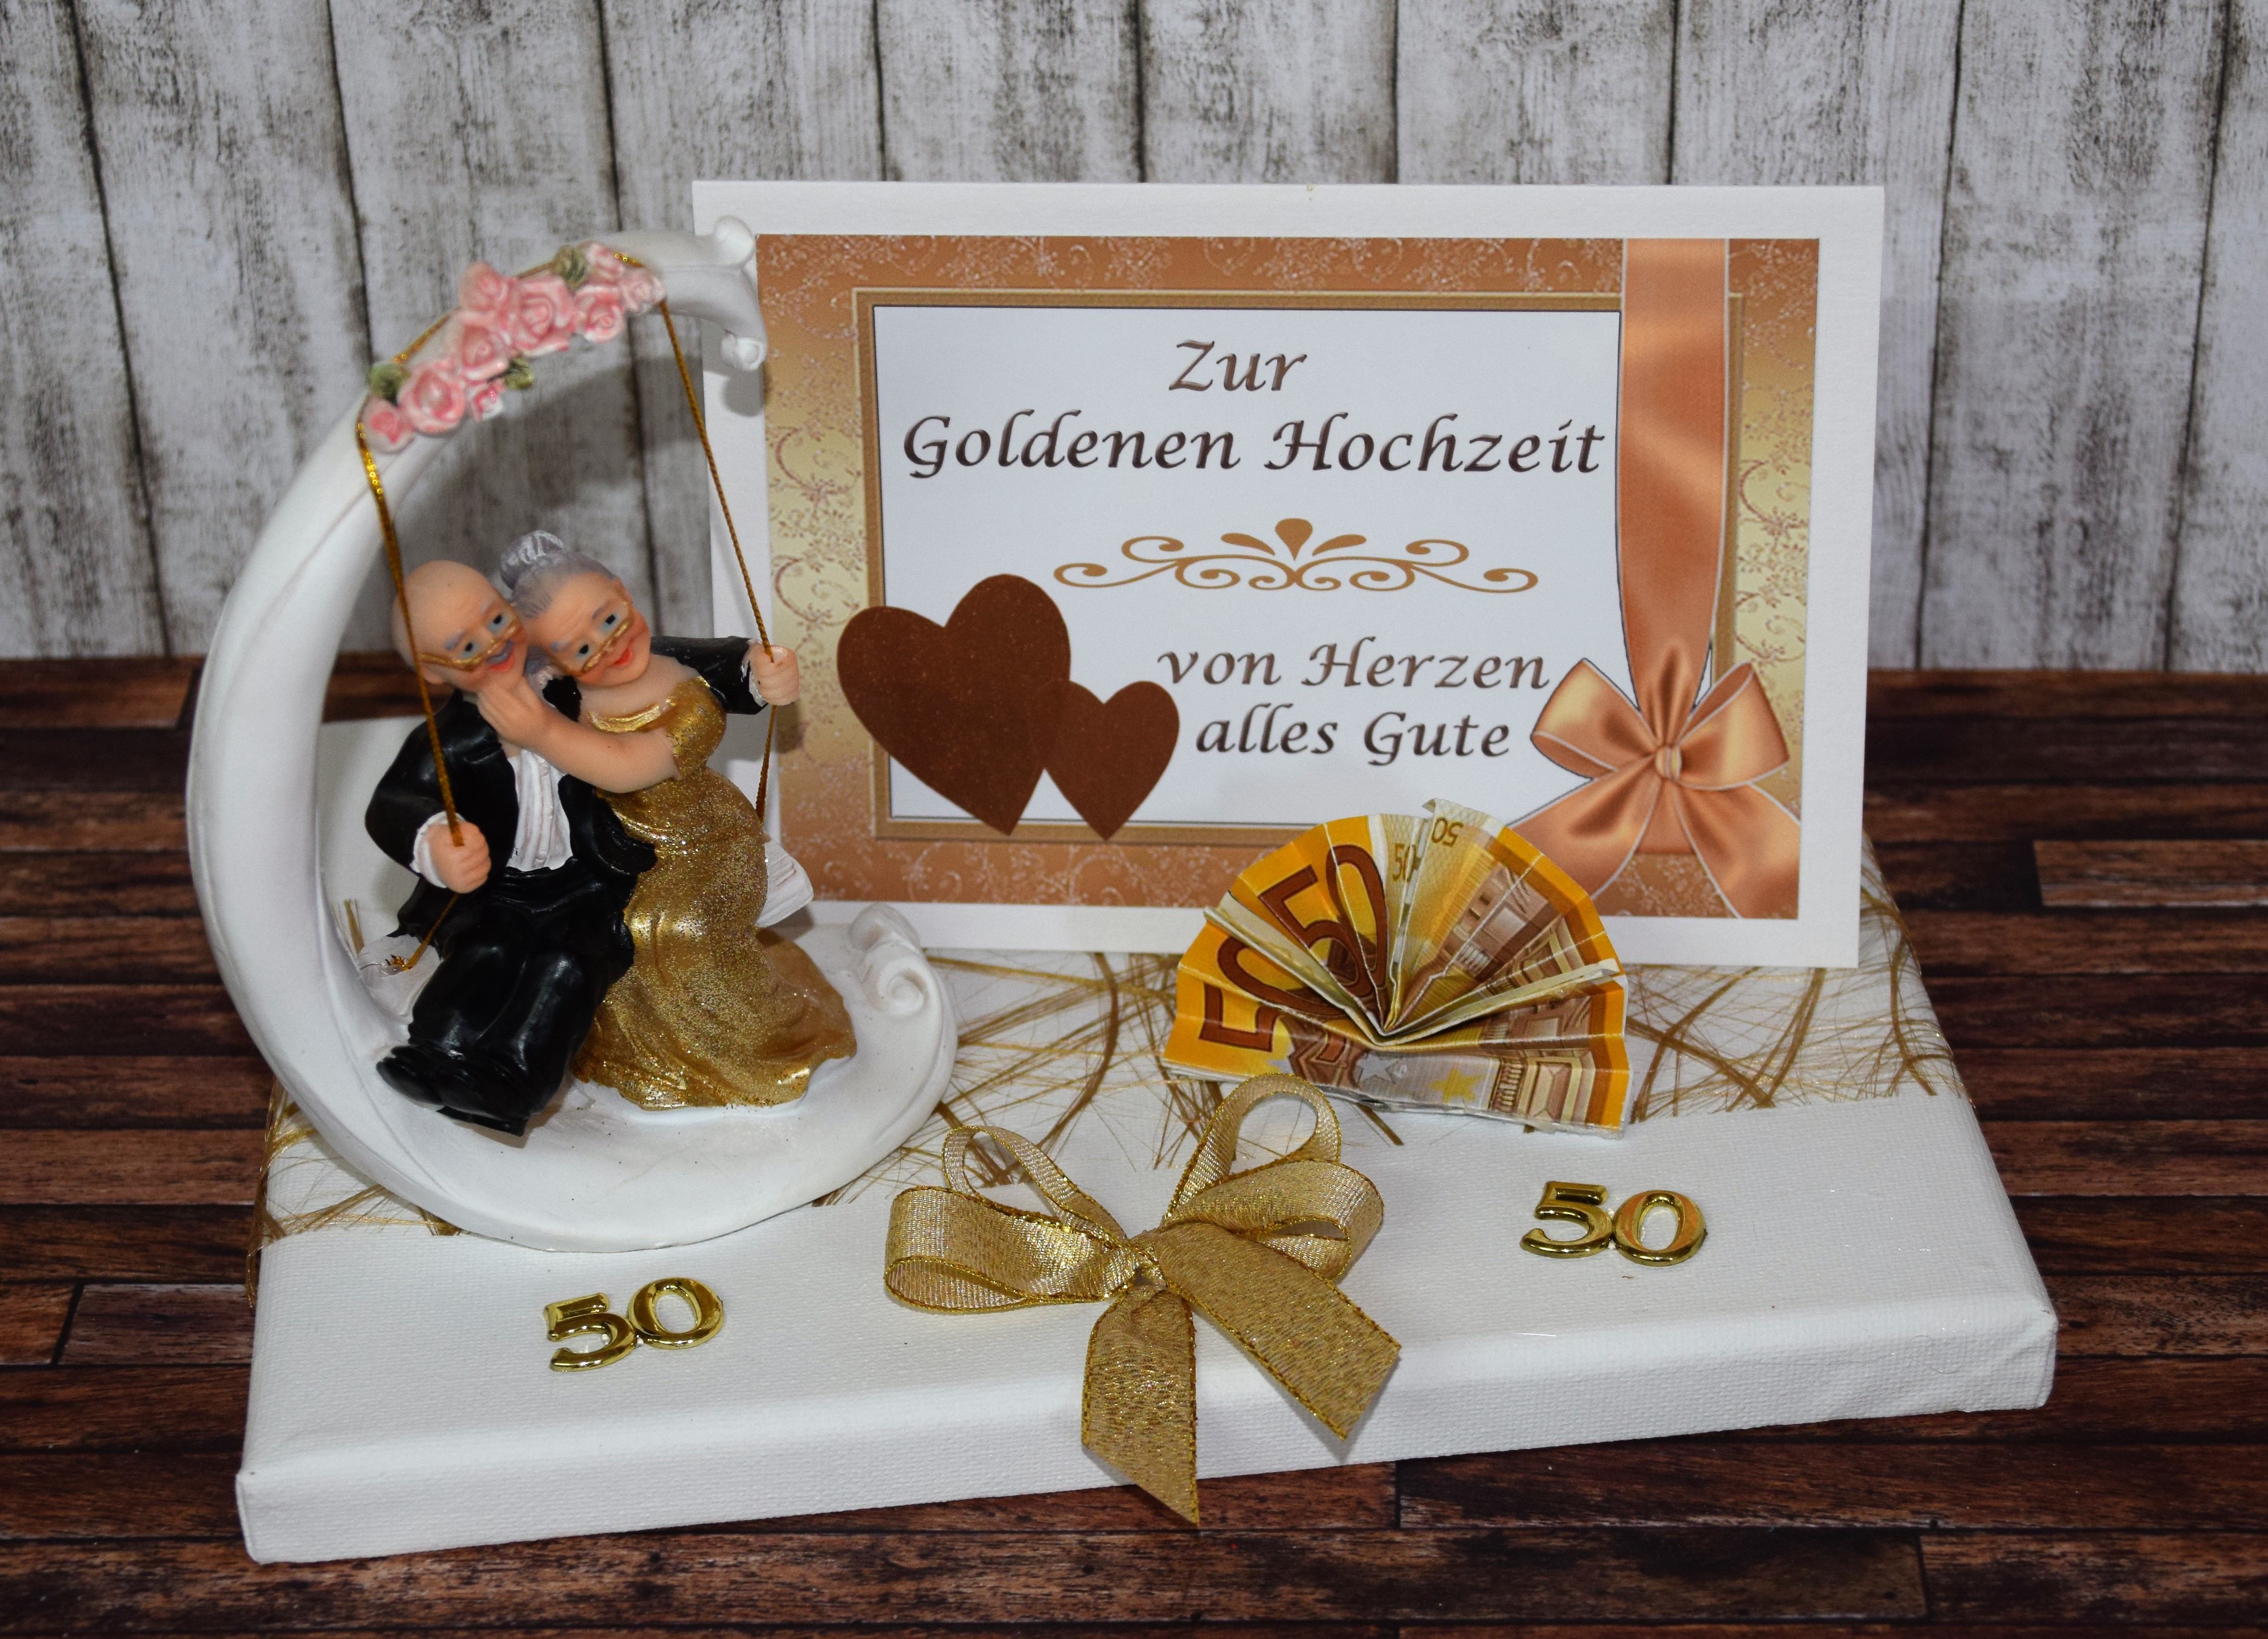 Geschenkidee Zur Goldenen Hochzeit
 Geld Geschenk zur goldenen Hochzeit mit Goldpaar auf Schaukel